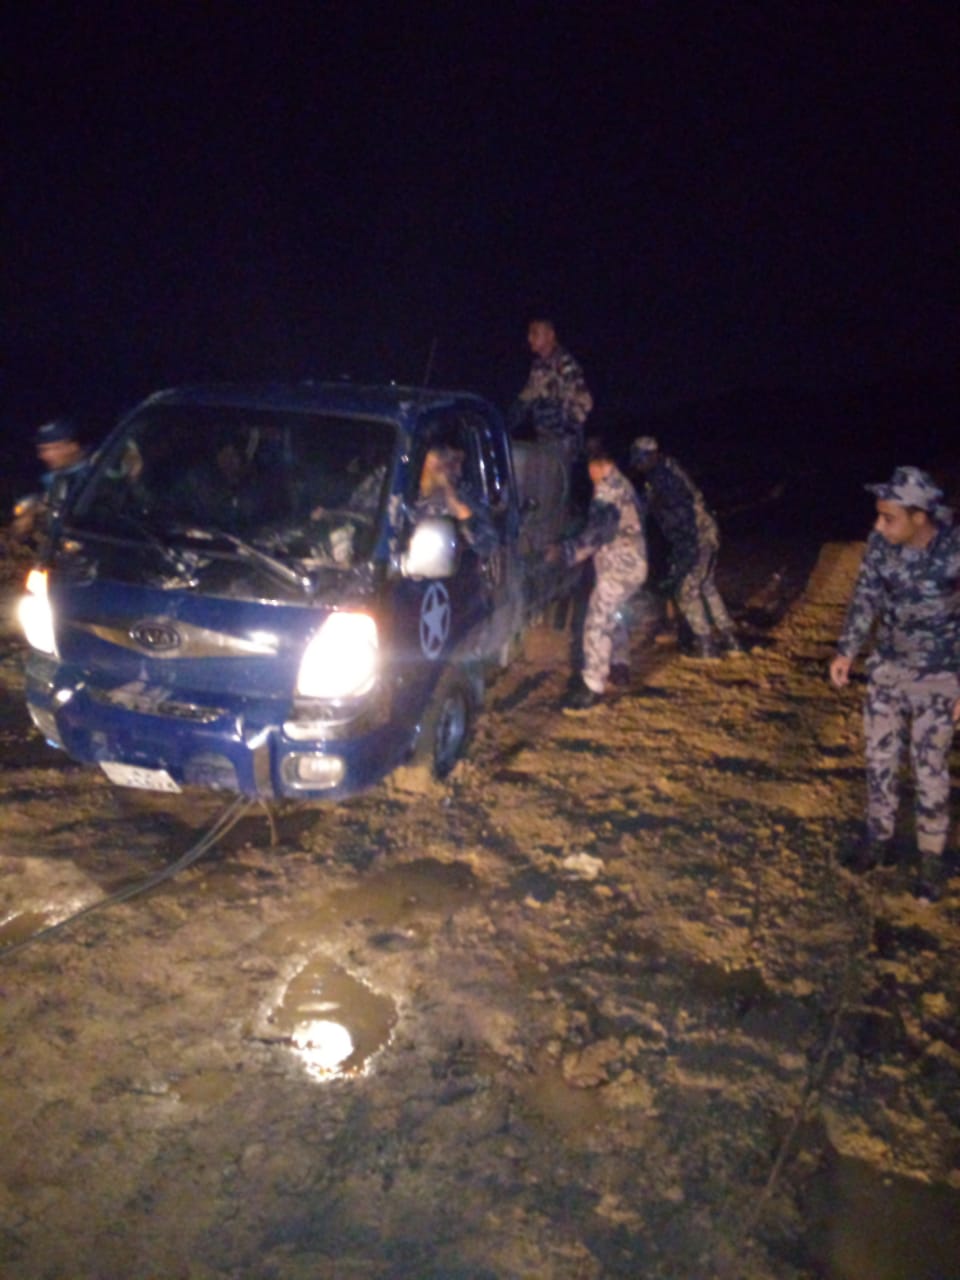 الدفاع المدني ينقذ شخصين علقت مركبتهم داخل مجرى سيل بمنطقة سد الكفرين - صور